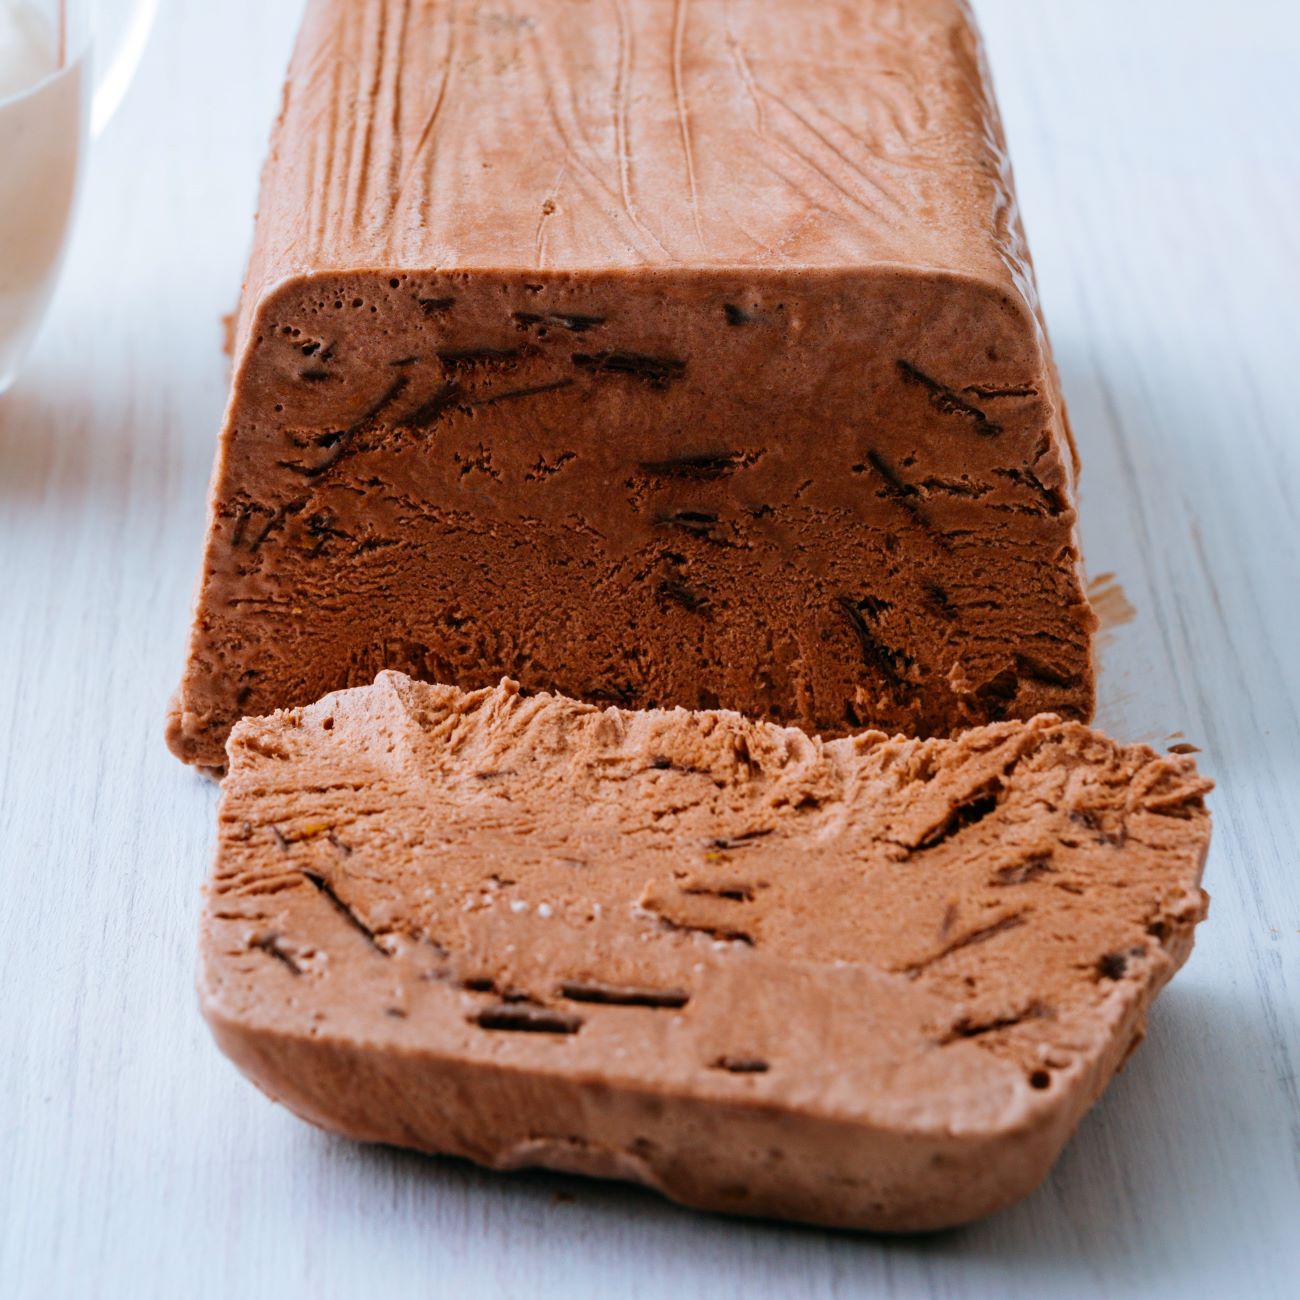 Čokoládový parfait je zobrazen nakrájený na bílé dřevěné desce.